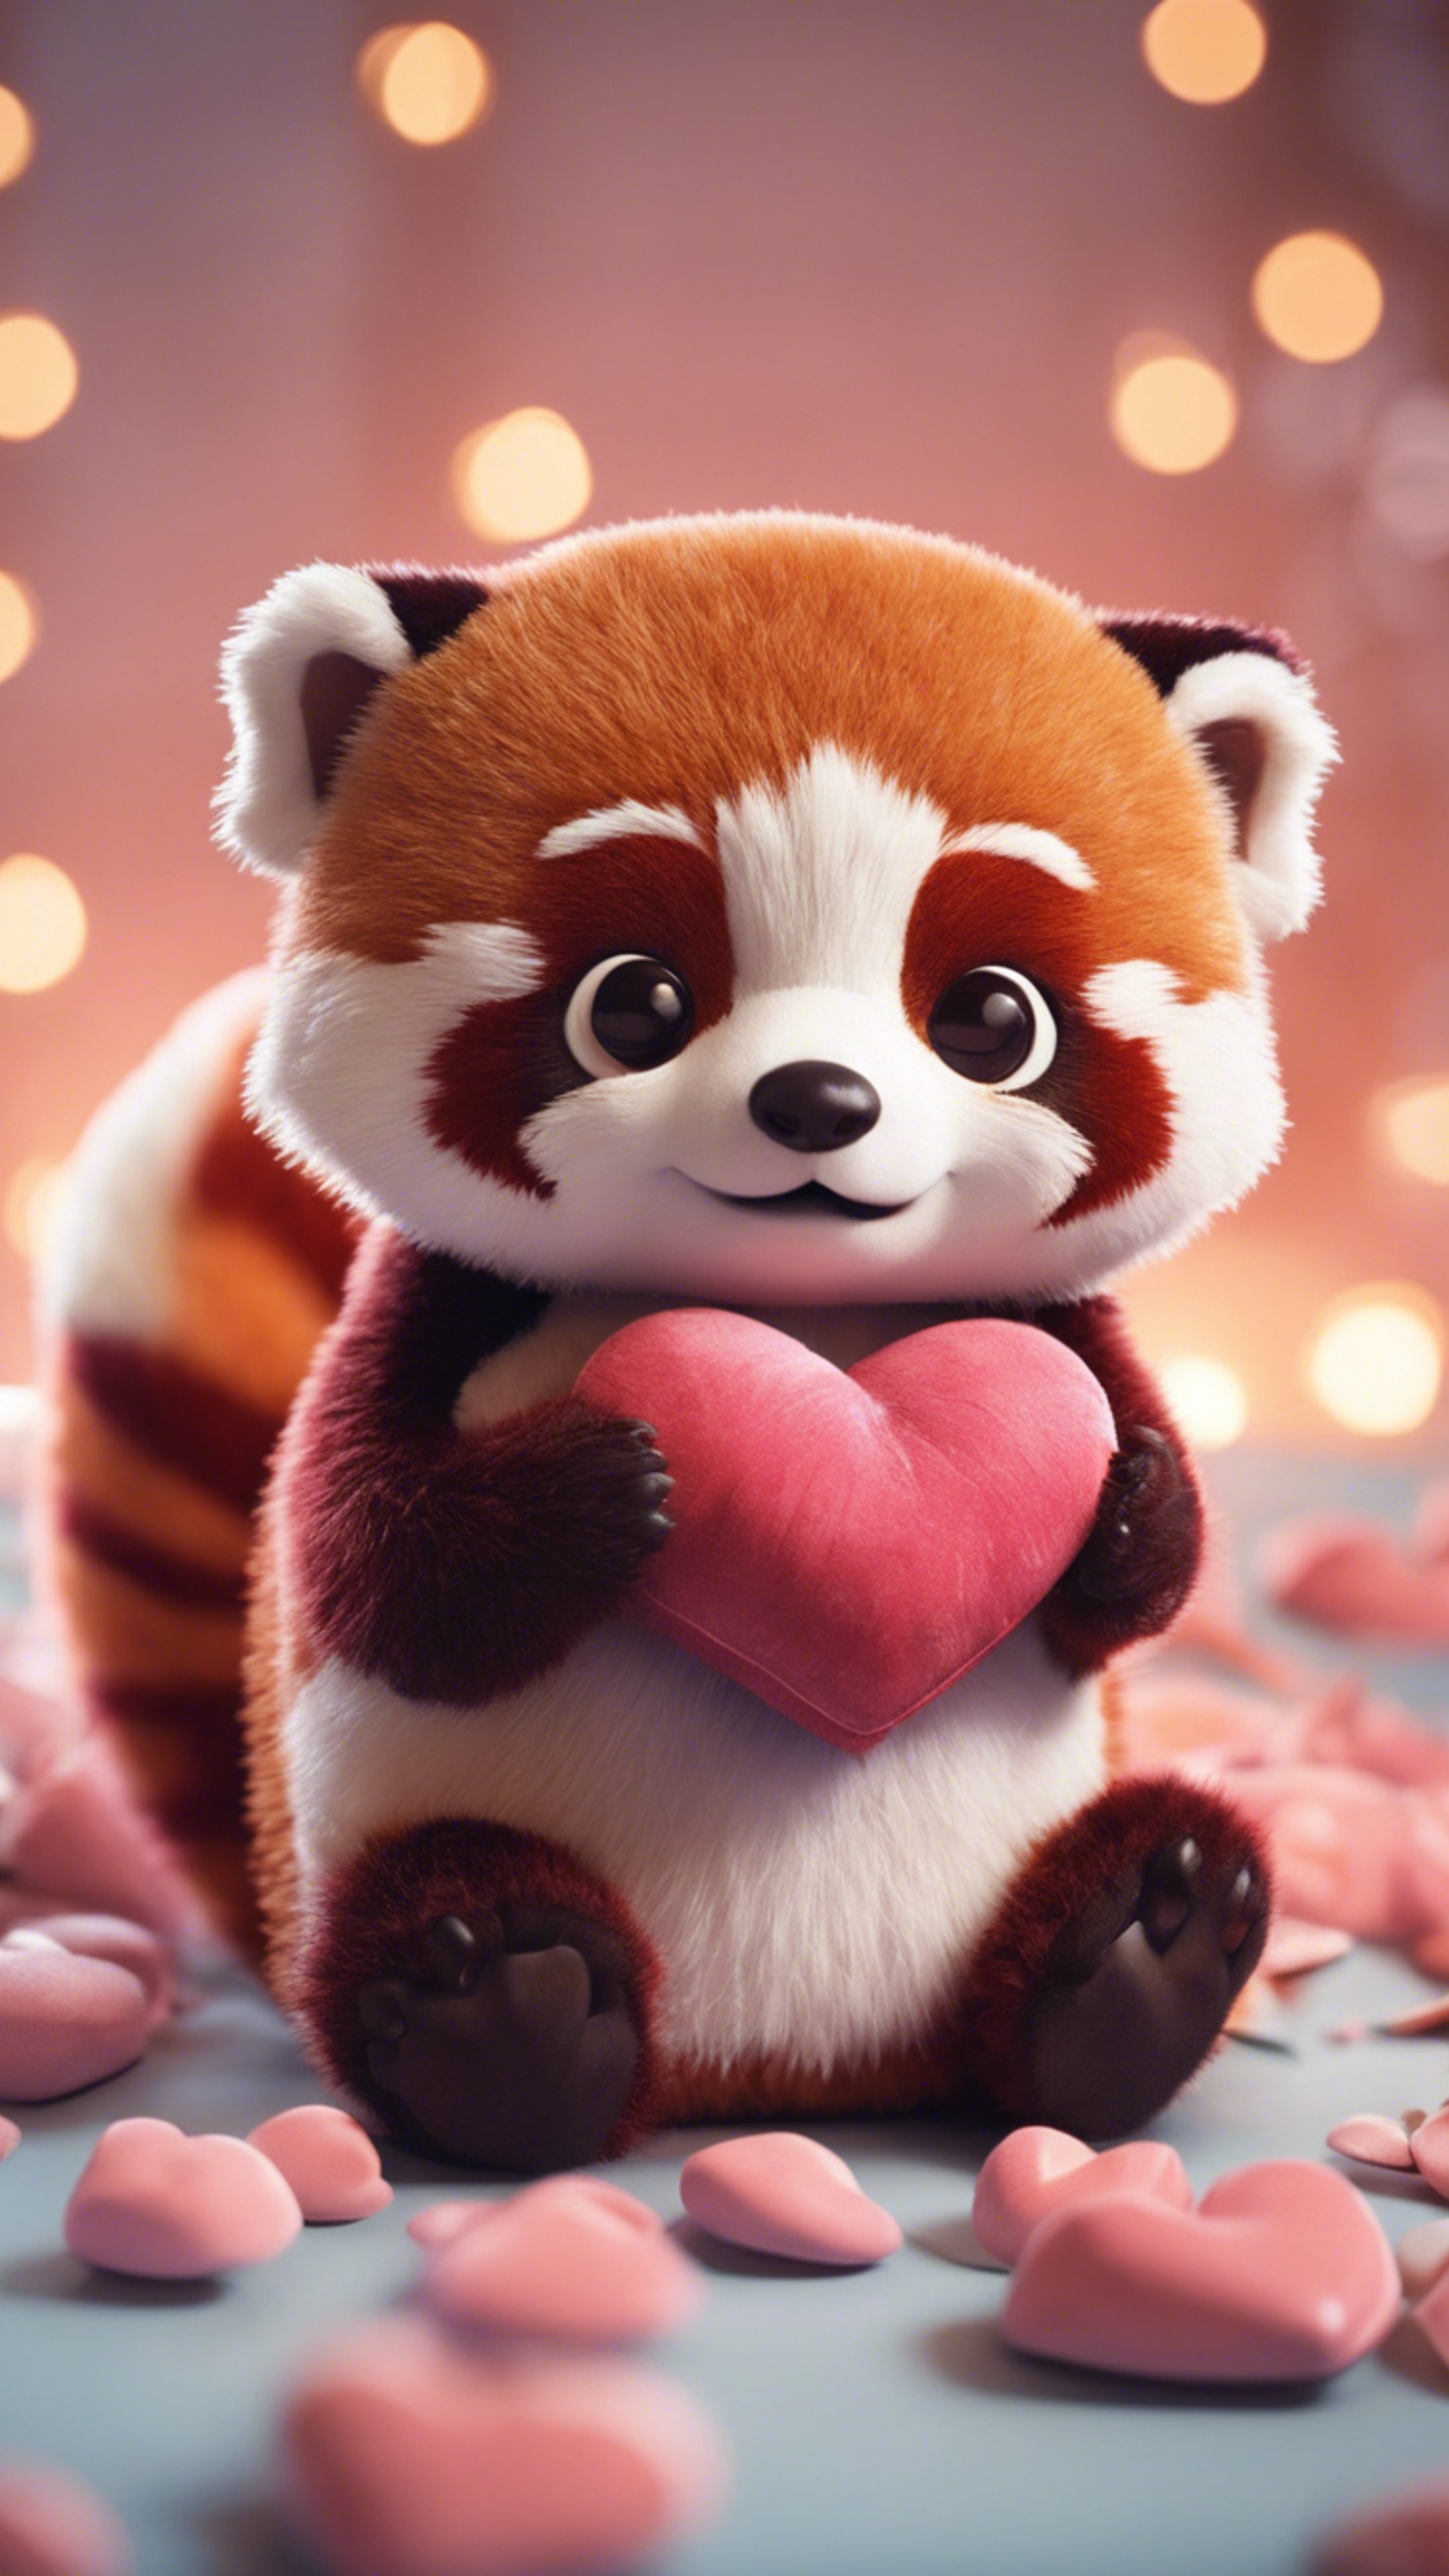 A kawaii red panda, wide-eyed, hugging a heart-shaped pillow. Ταπετσαρία[45d6f15b7fce49d58985]